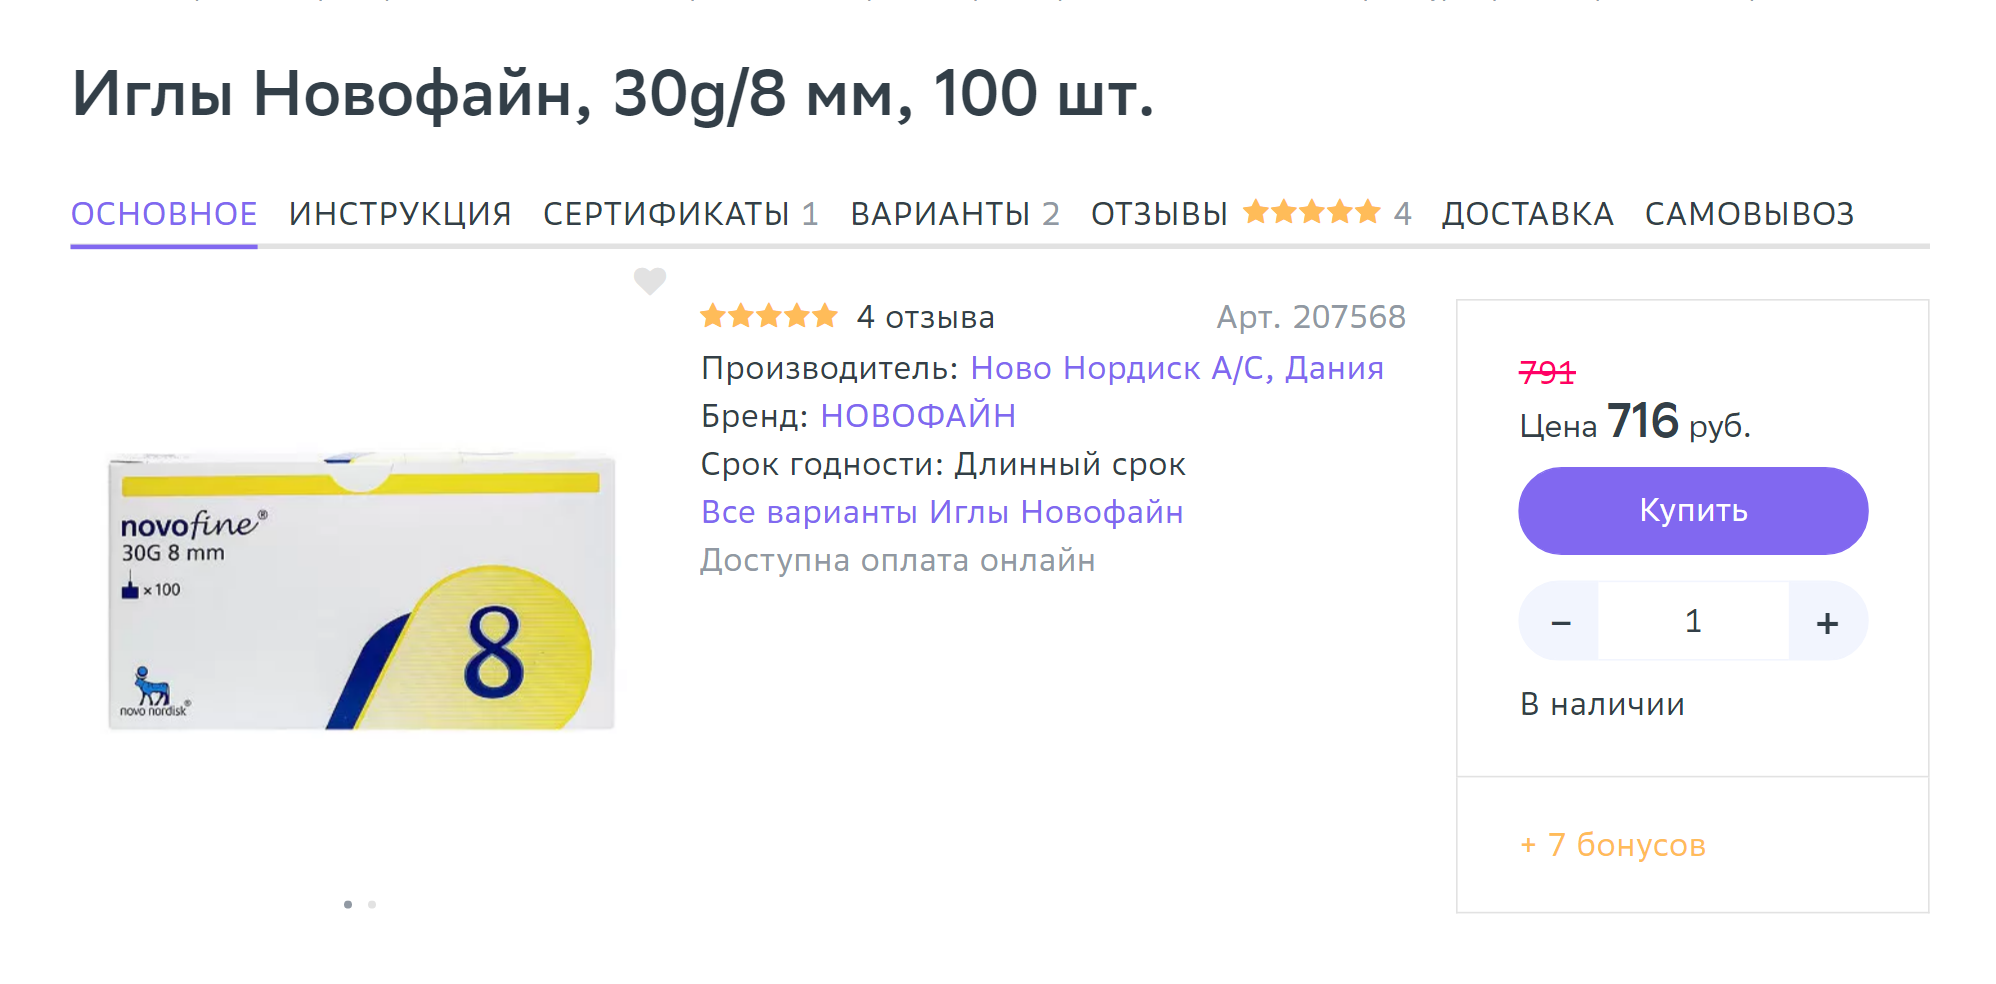 Гестационный сахарный диабет (ГСД) - цены на услугу в клинике «Мать и дитя» в Москве